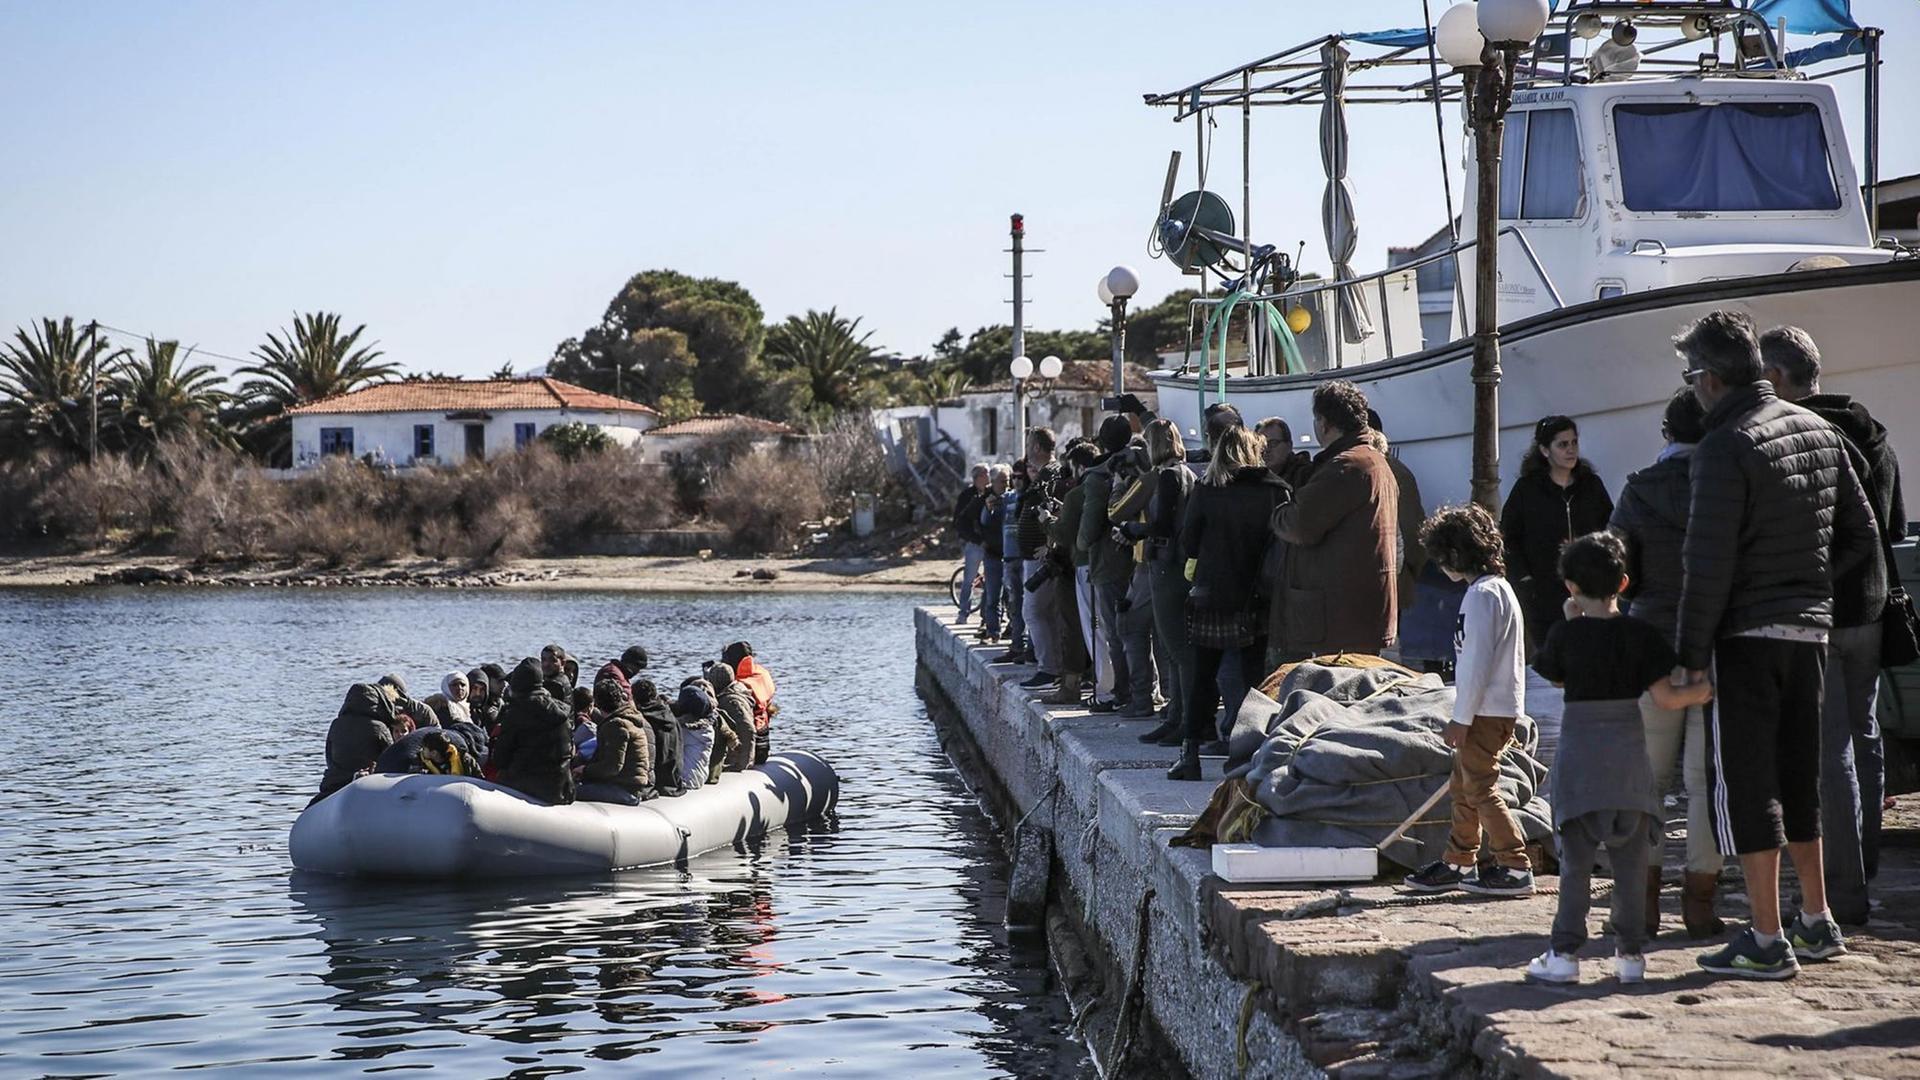 Ein Schlauchboot mit ca. 20 Menschen liegt vor einem Anlegepier, auf dem ähnlich viele Menschen aufgereiht stehen.